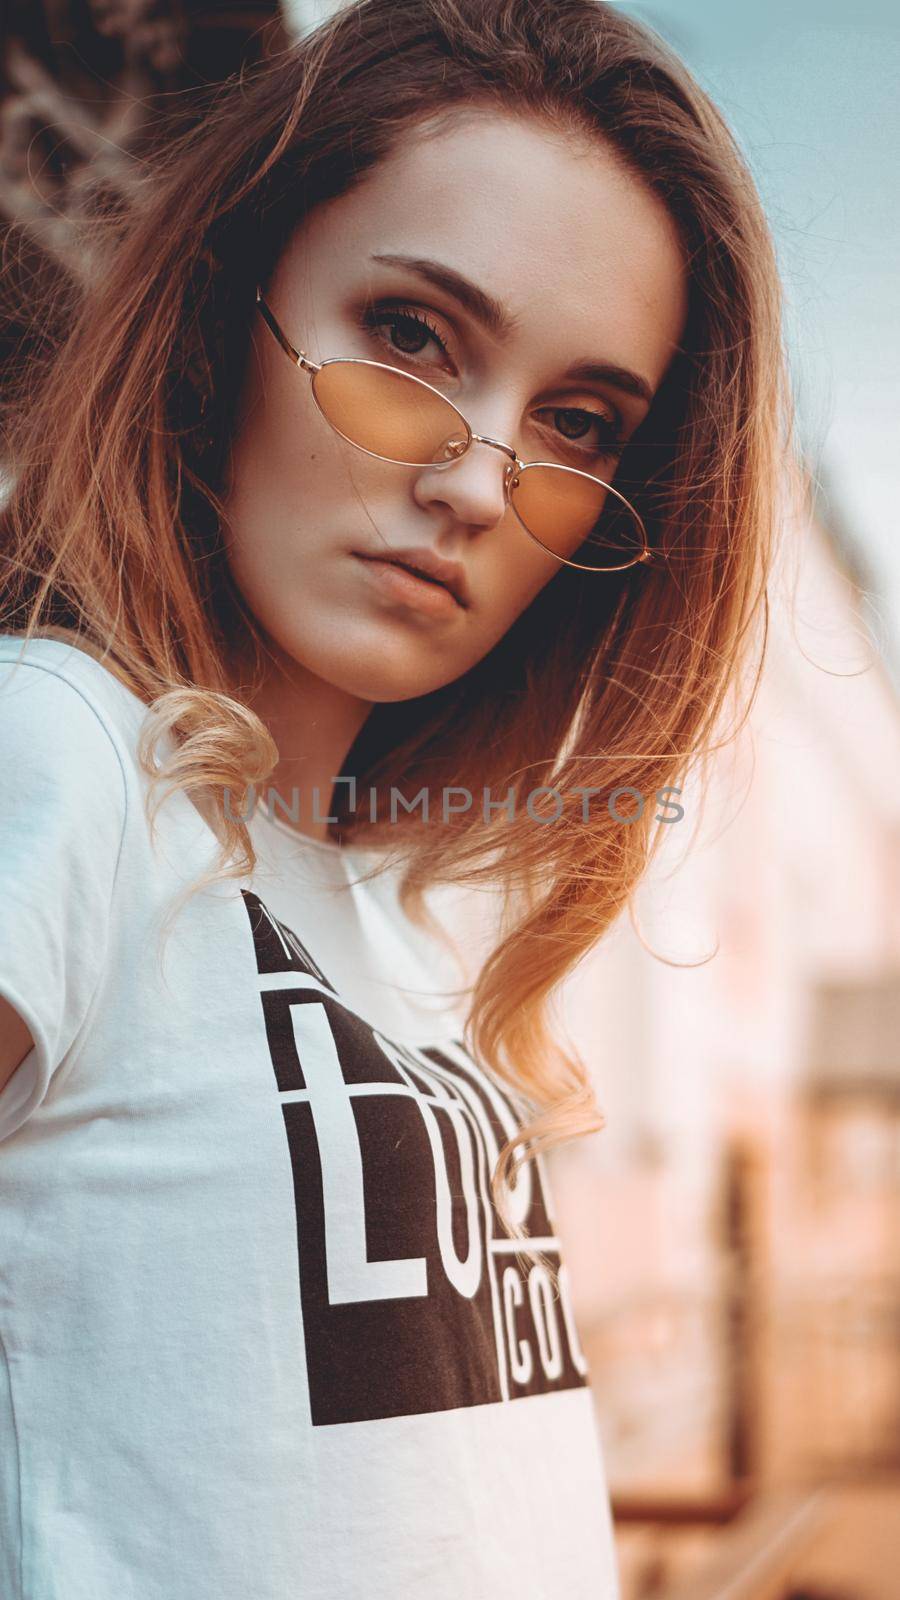 Fashion portrait stylish pretty woman in sunglasses posing in the city by natali_brill